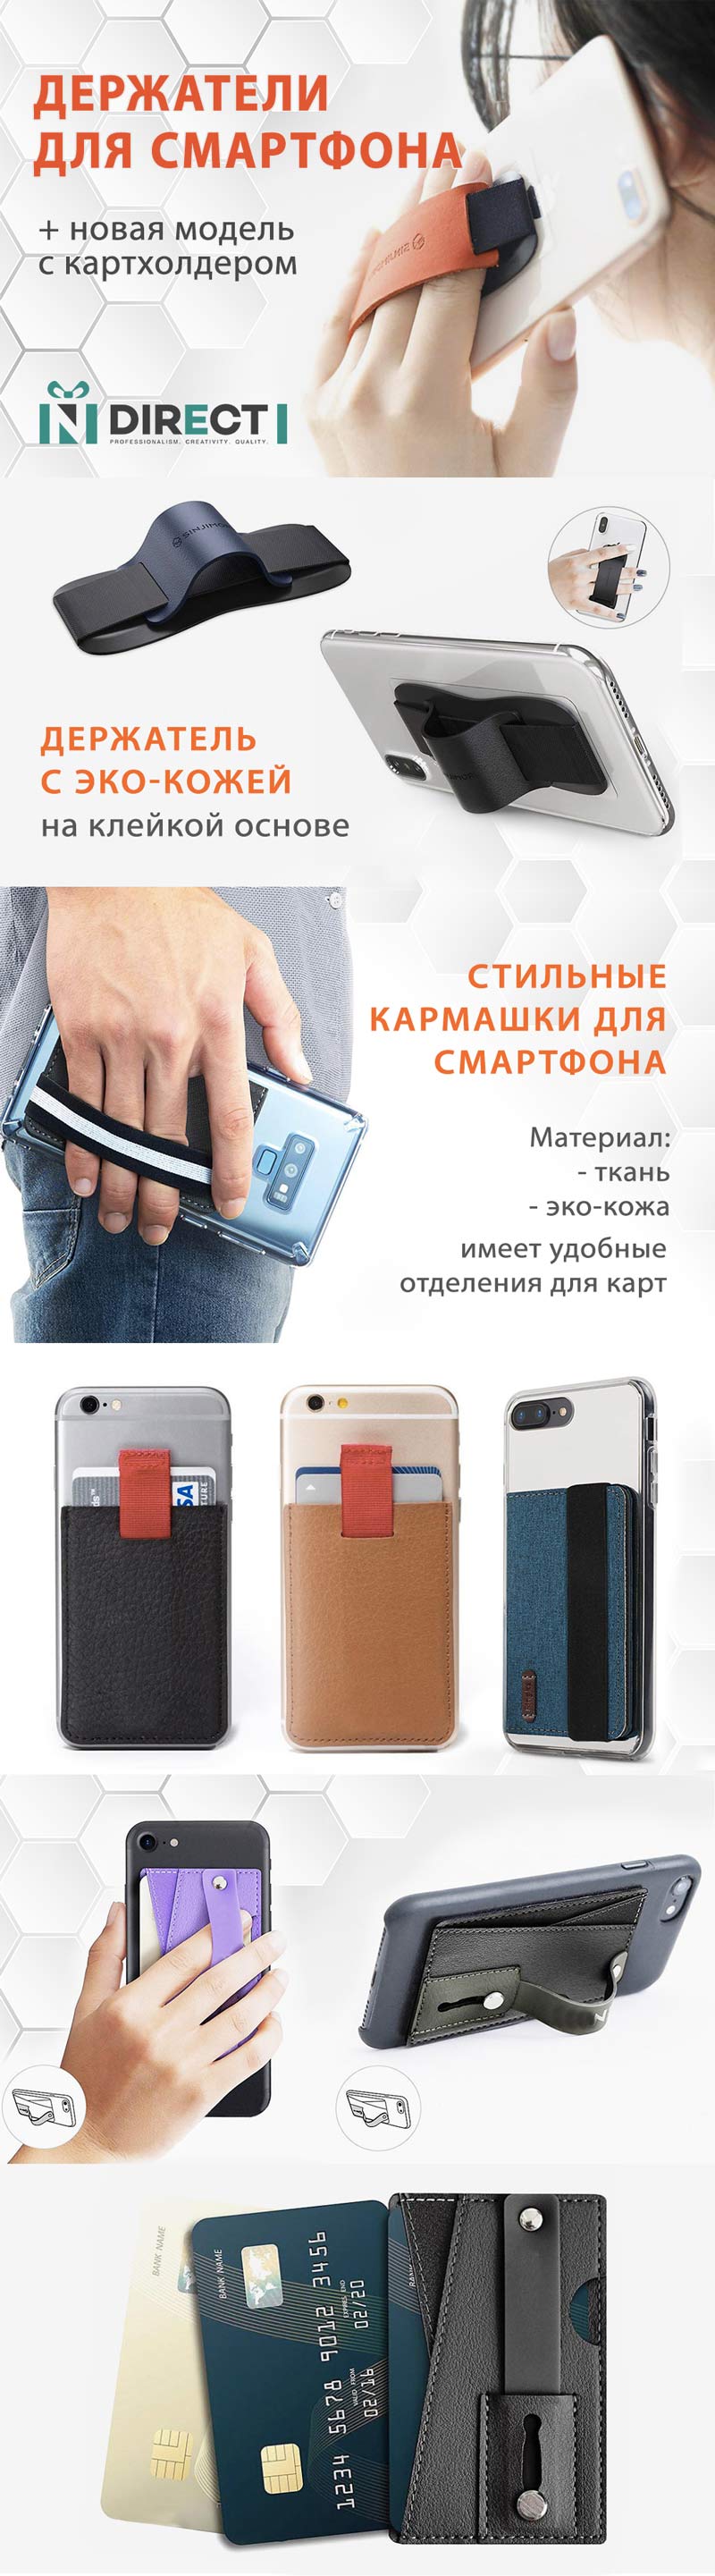 Держатели для смартфонов + кармашек